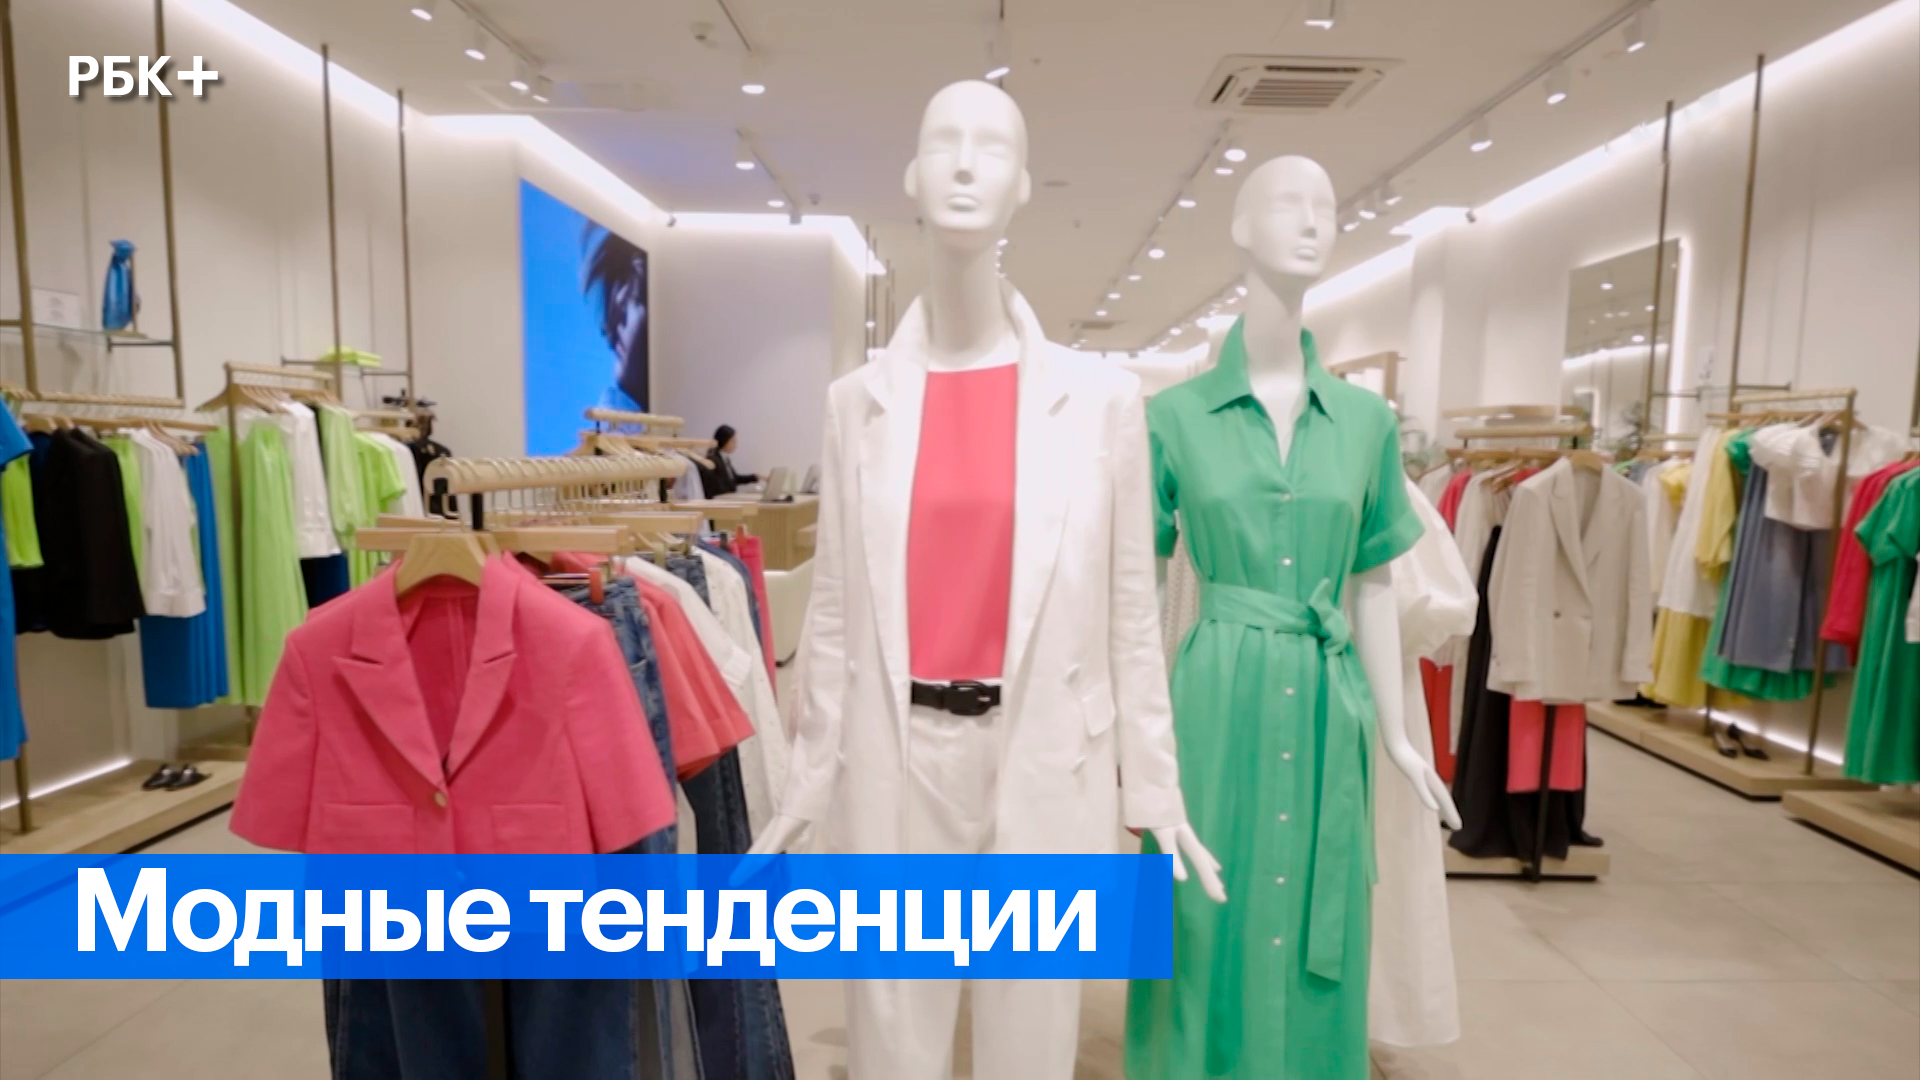 На что делают ставку российские бренды? Тренды сезона и новые коллекции